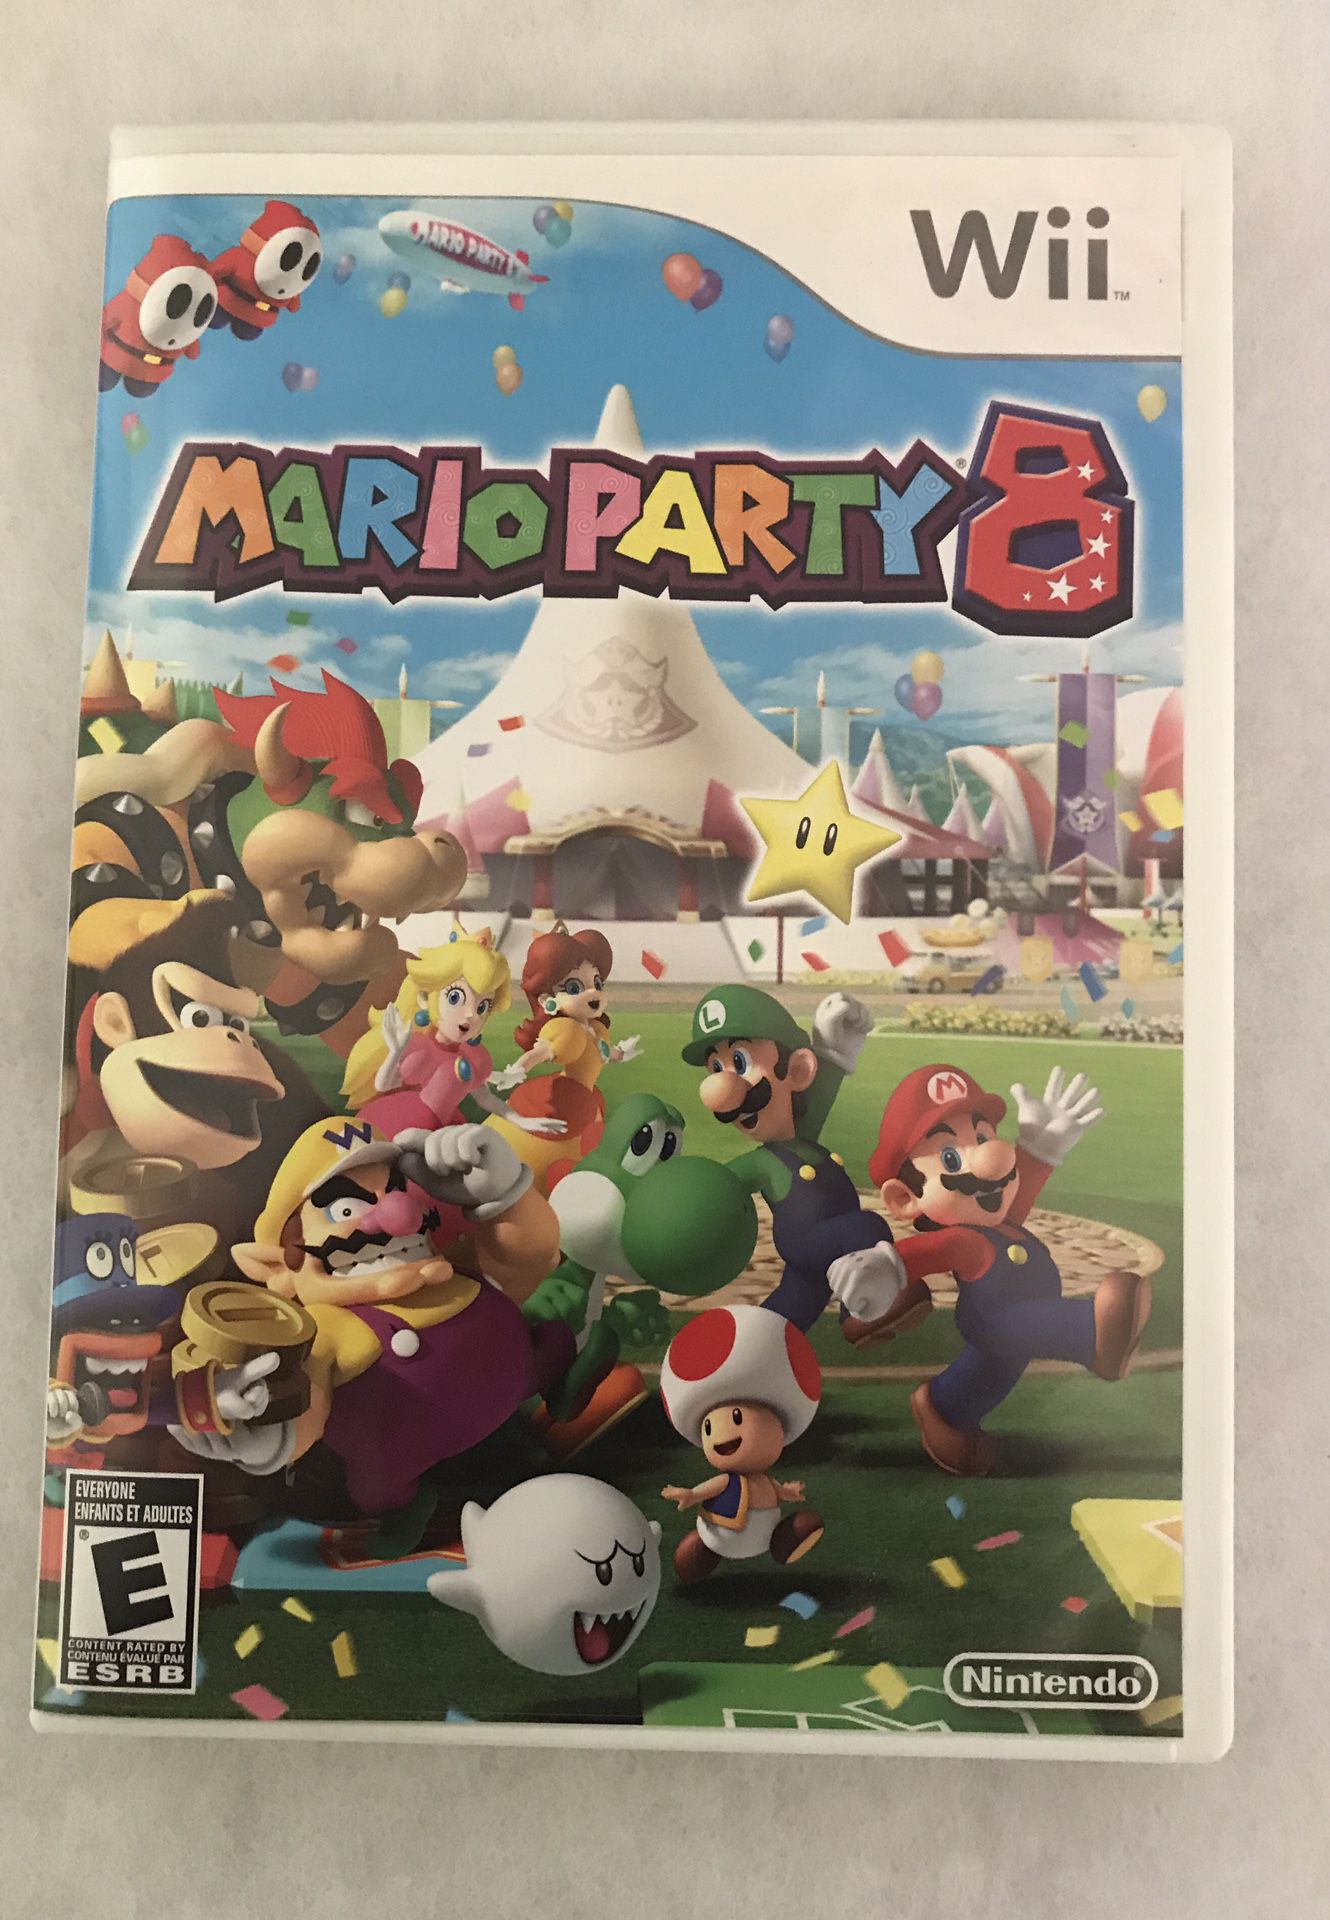 Ninentendo Mario Party 8 for Wii